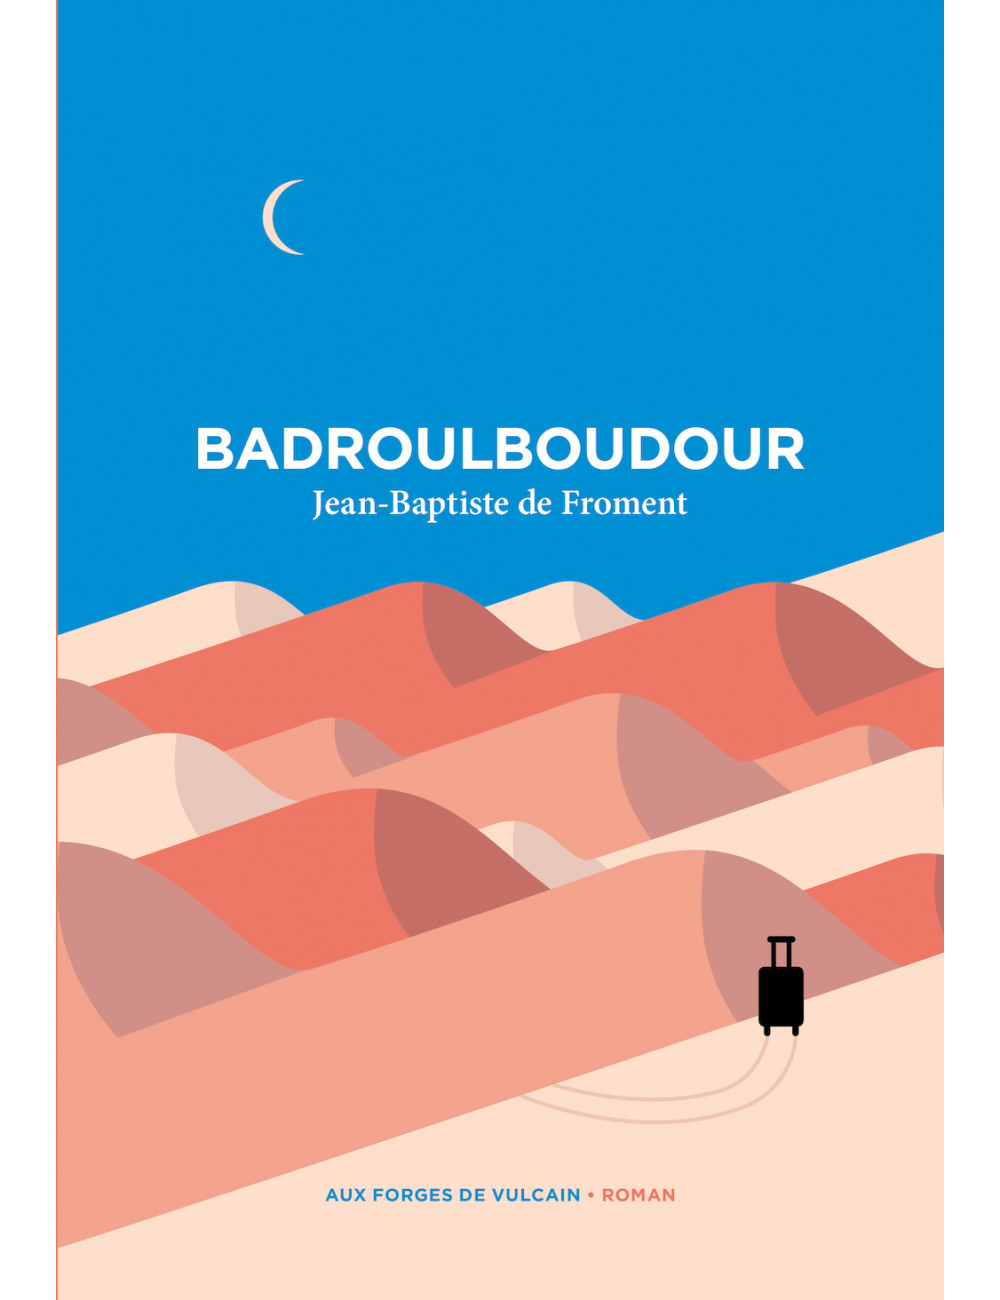 Le livre Badroulboudour de Jean-Baptiste de Froment forges de vulcain